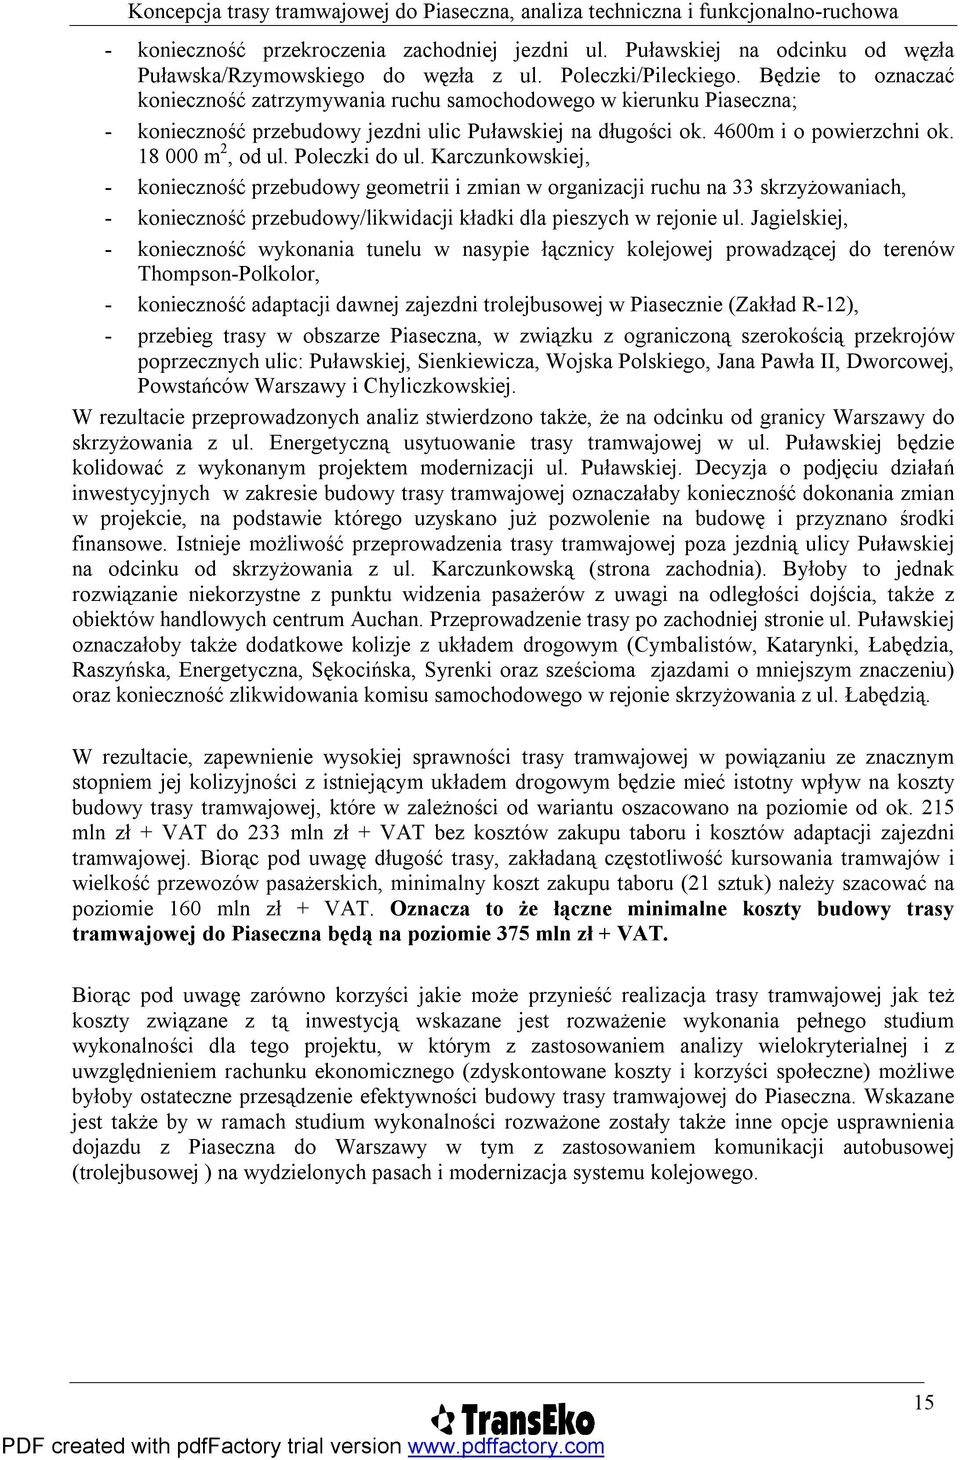 Poleczki do ul. Karczunkowskiej, - konieczność przebudowy geometrii i zmian w organizacji ruchu na 33 skrzyżowaniach, - konieczność przebudowy/likwidacji kładki dla pieszych w rejonie ul.